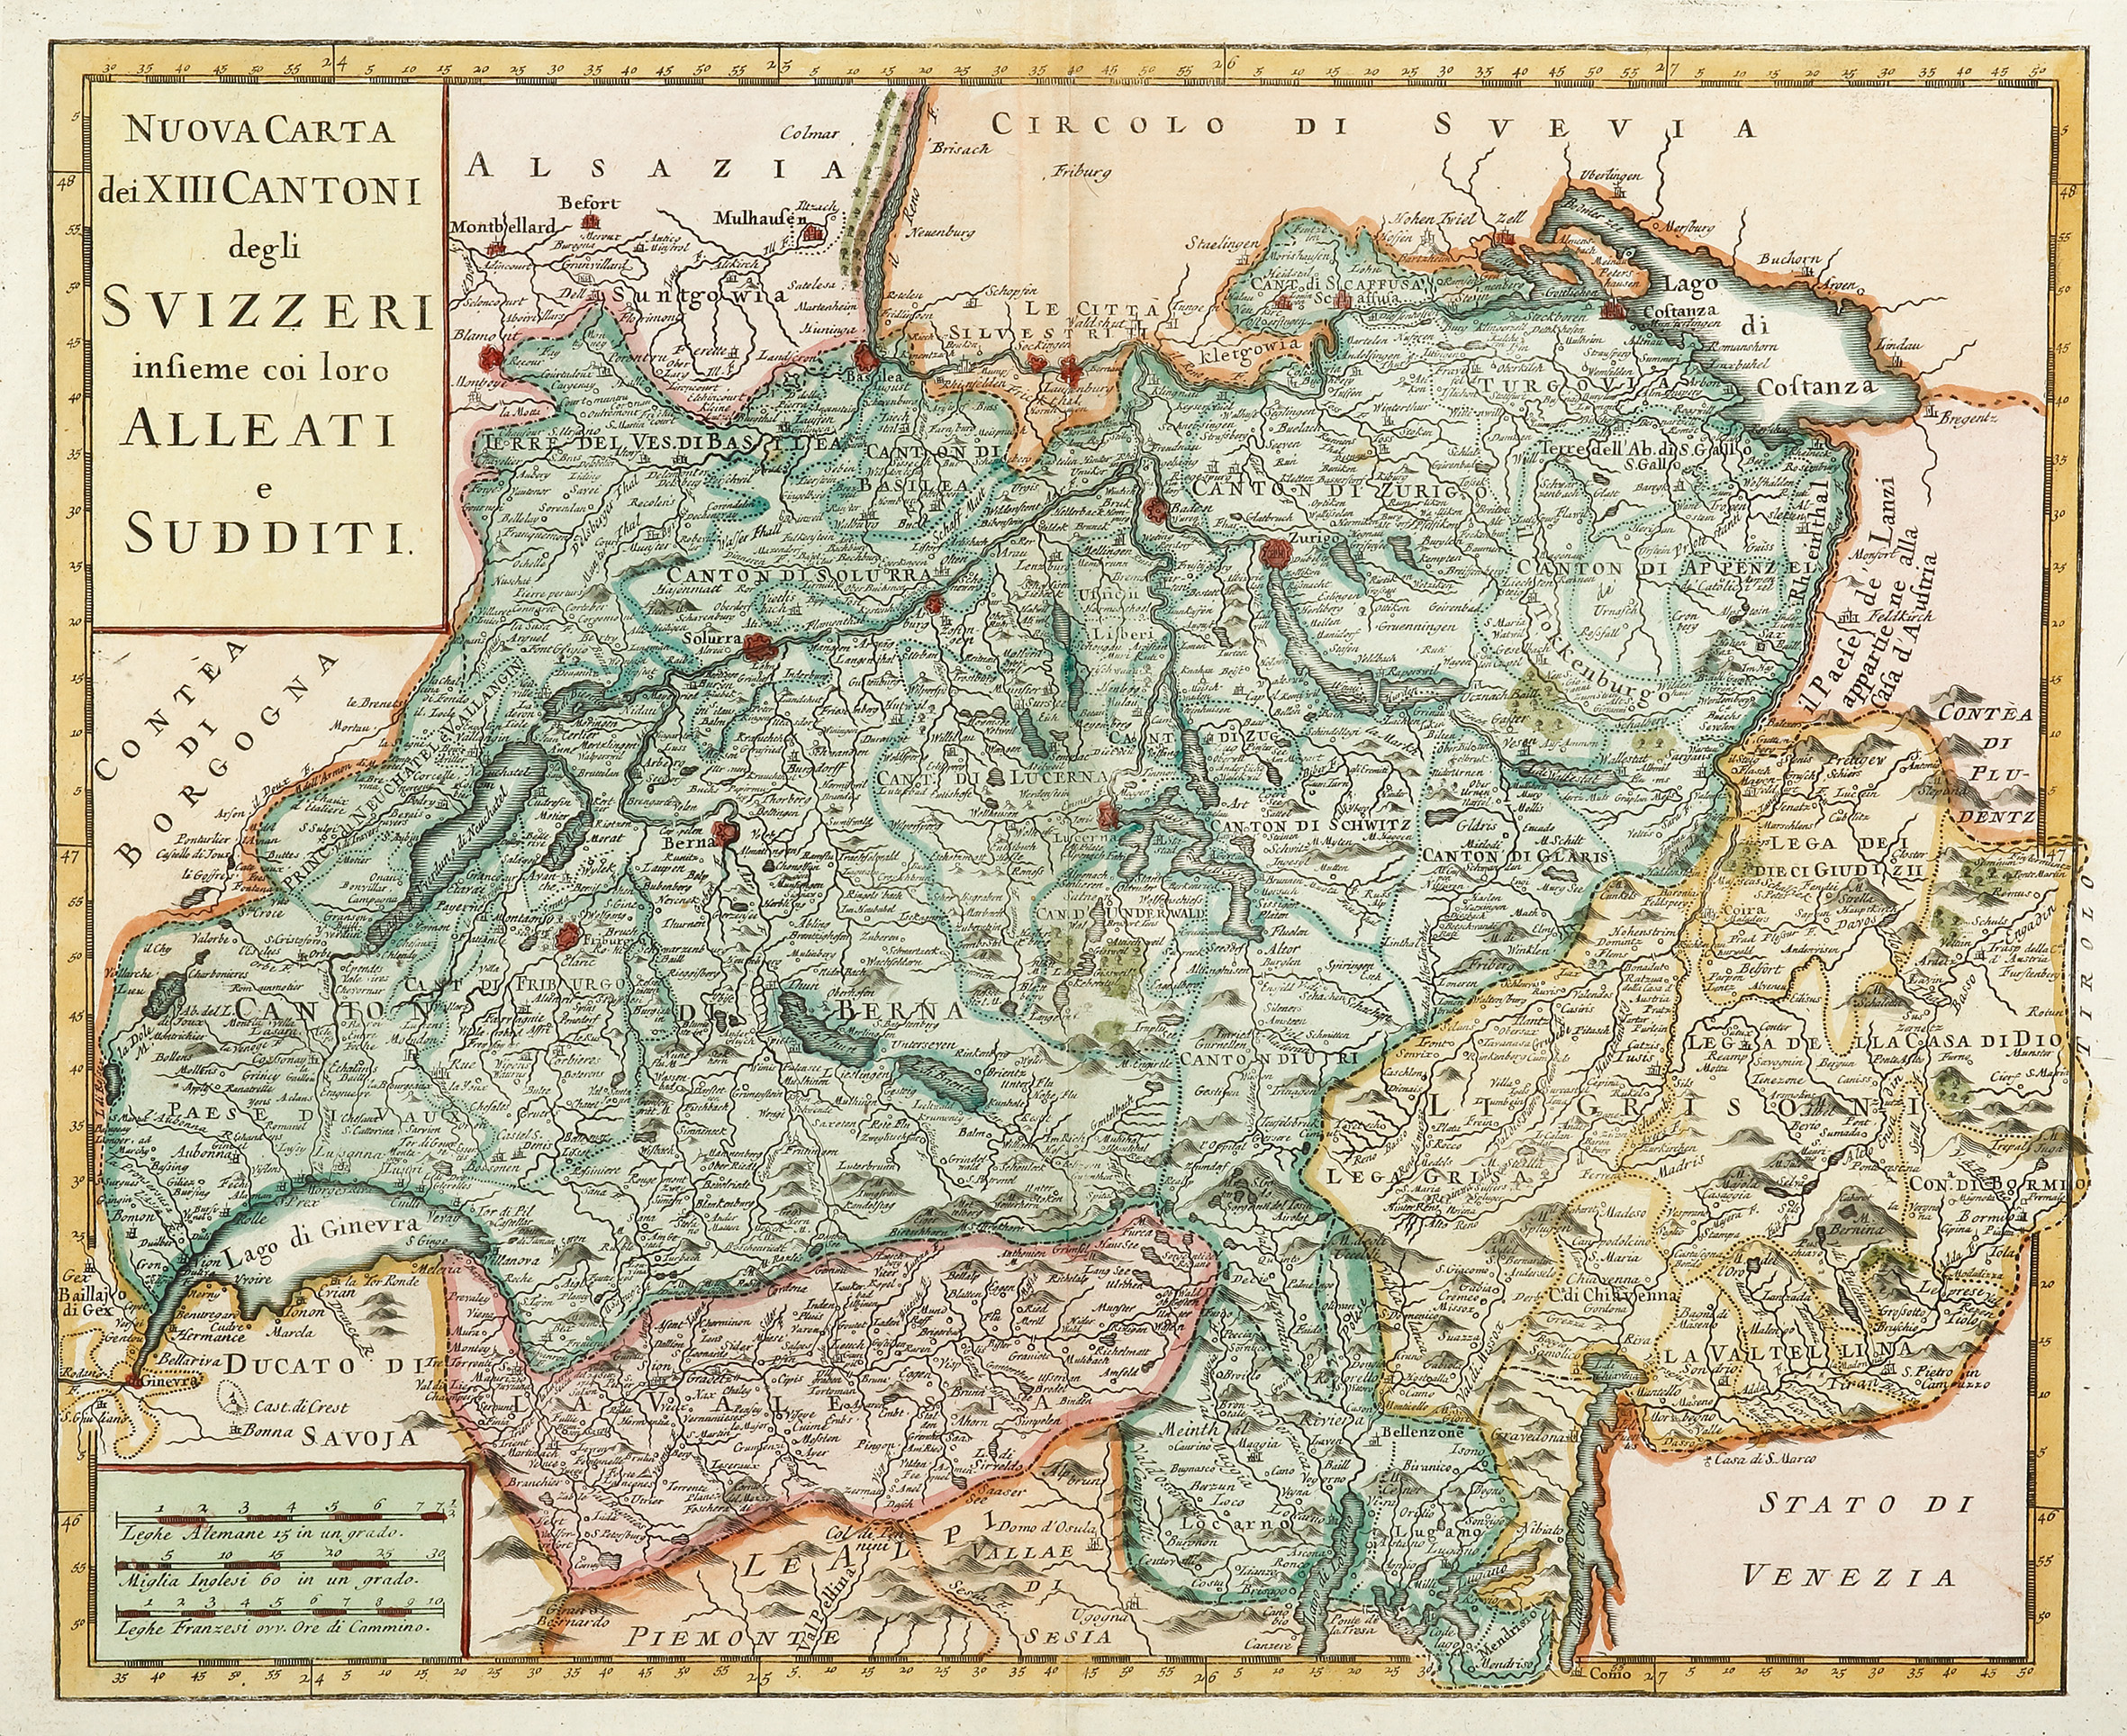 Nuova carta dei XIII Cantoni degli Svizzeri insieme coi loro Alleati e Sudditi - Antique Print from 1750